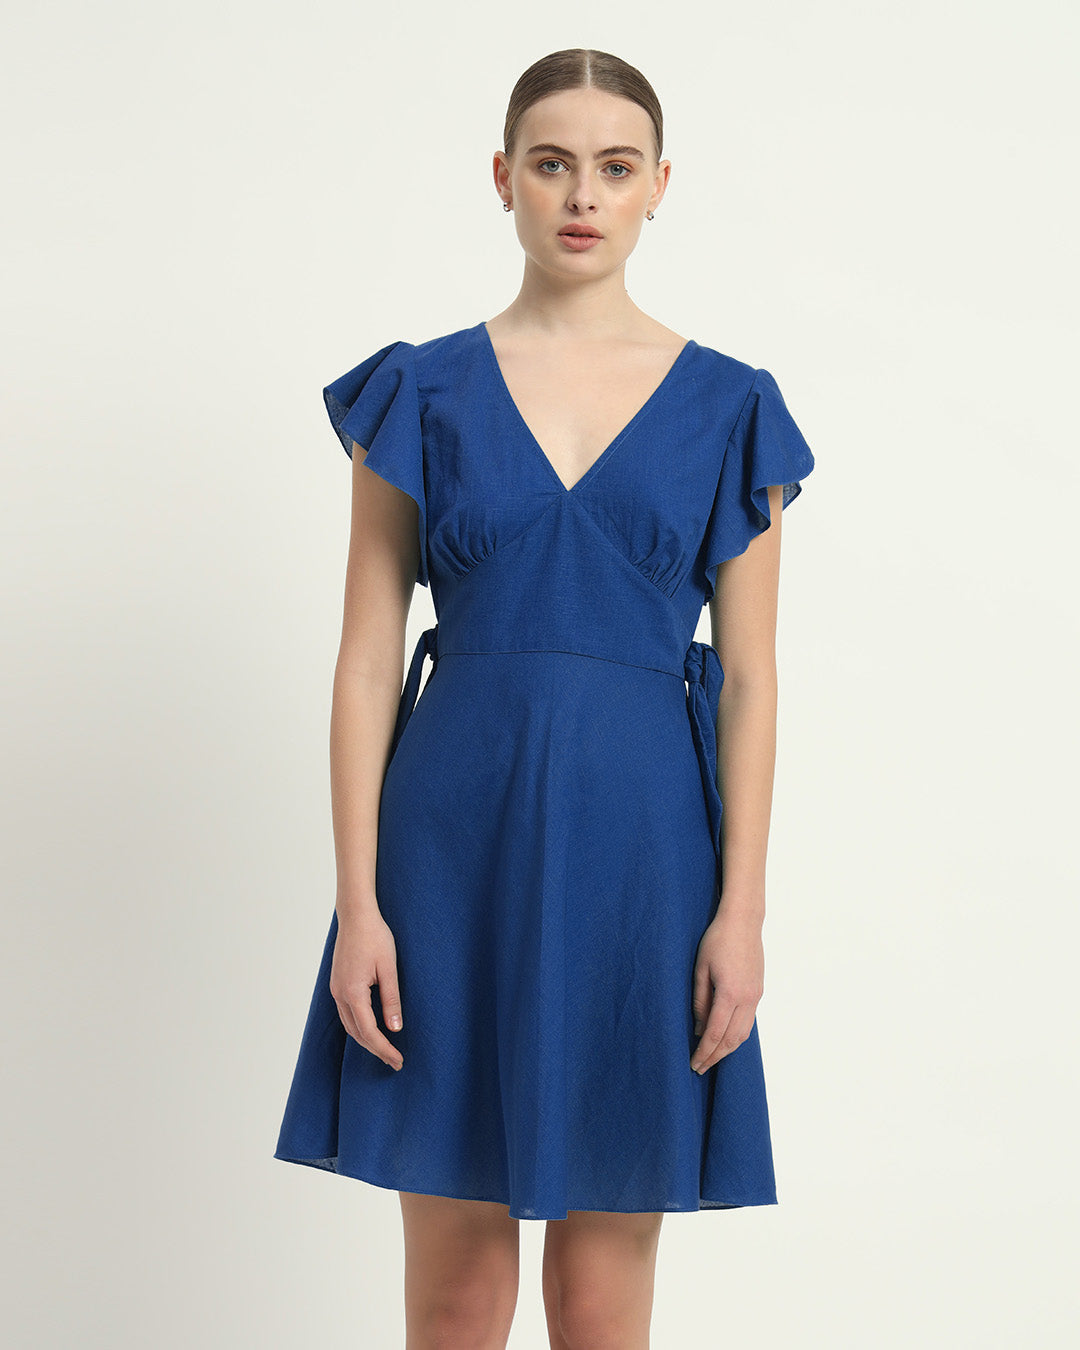 The Cobalt Fairlie Cotton Dress